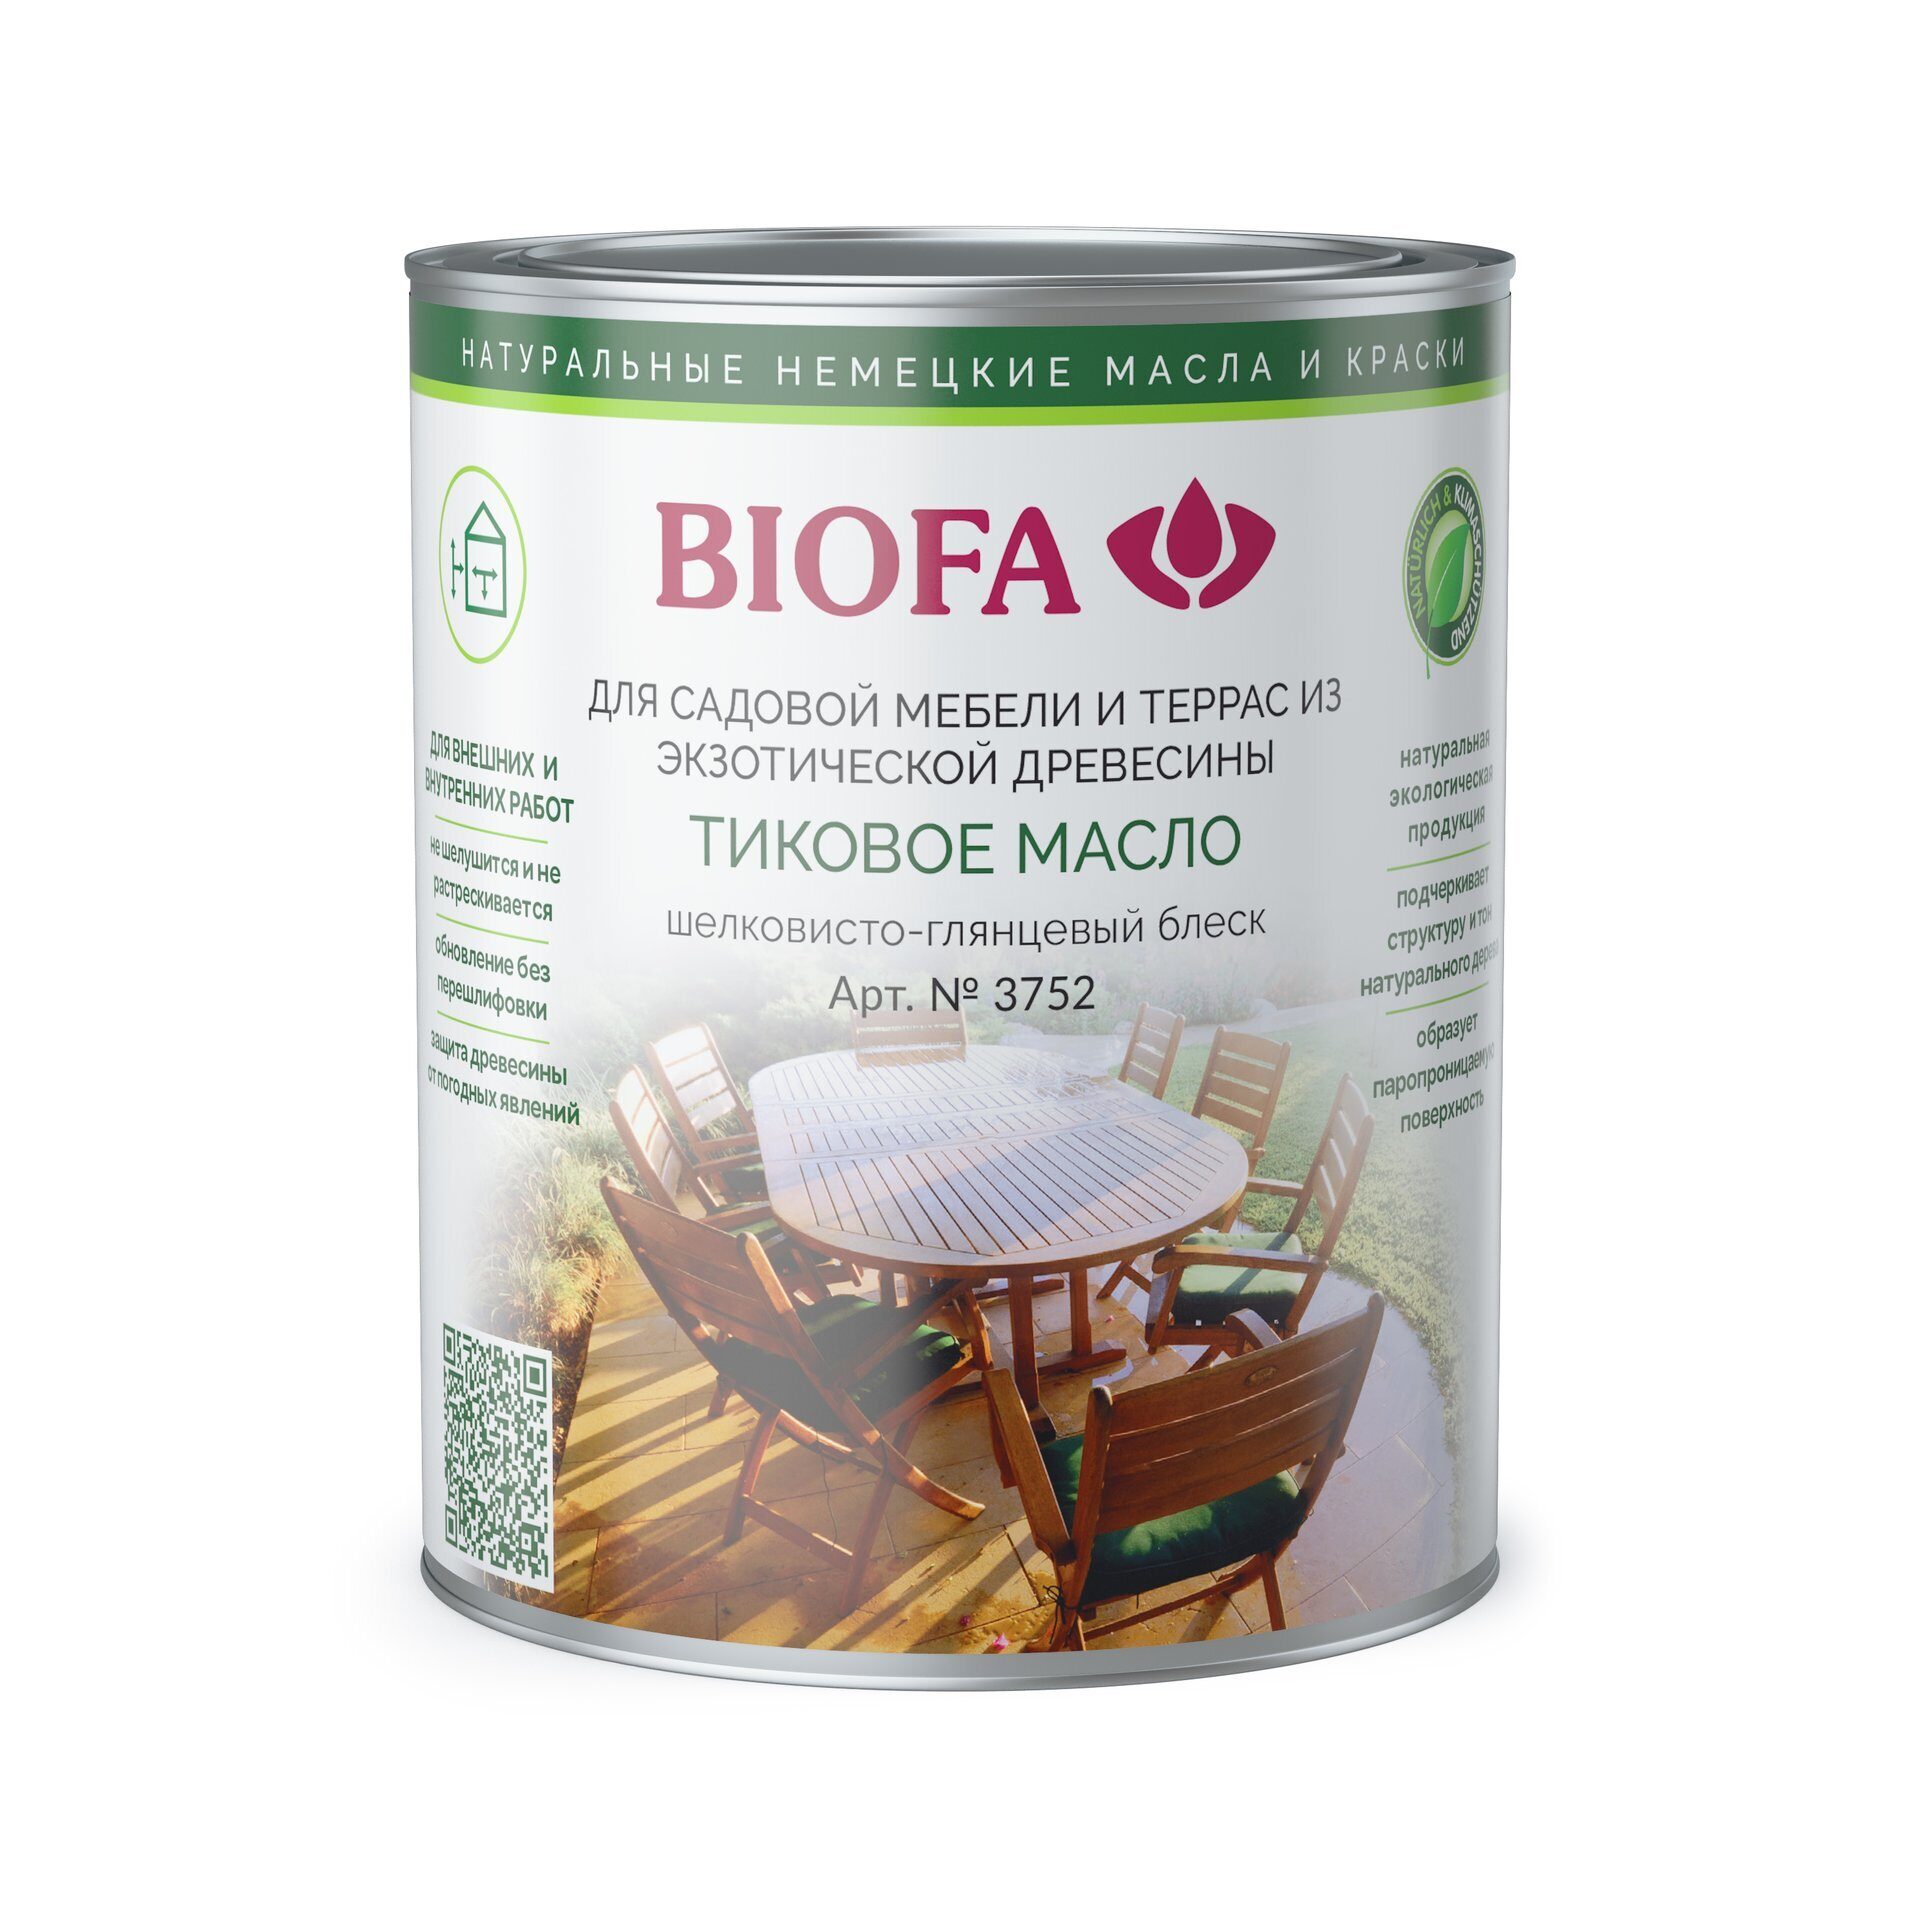 Масло для дерева мерлен. Масло Biofa для рабочих поверхностей 2052. Масло Биофа 2044. Biofa масло для дерева кедр. "Biofa", лазурь 1075, цвет "золотистый тик.